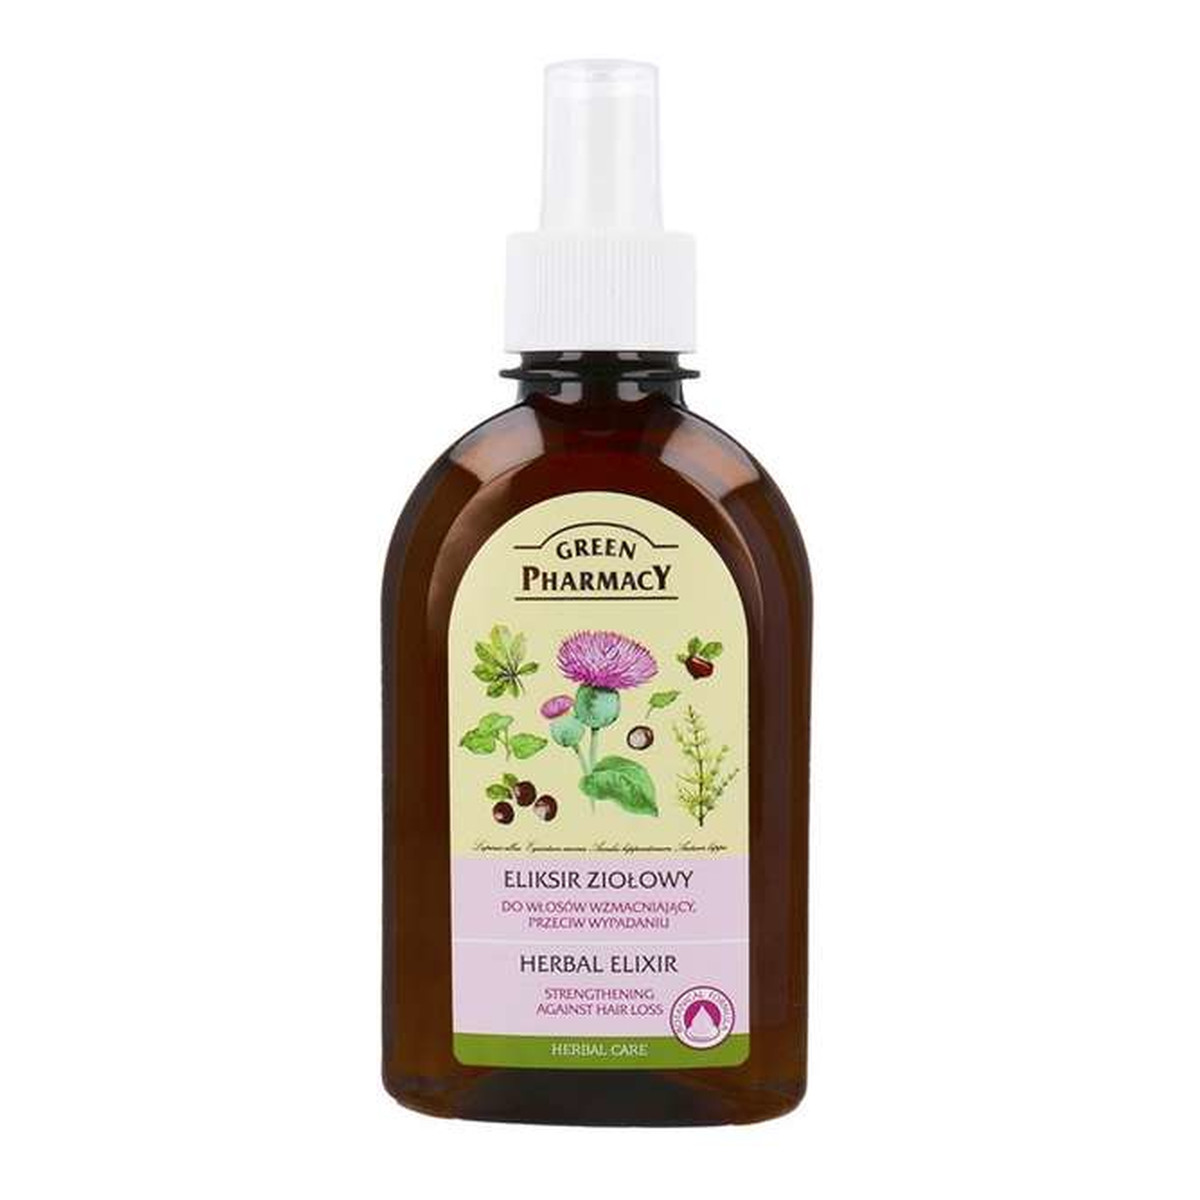 Green Pharmacy Herbal Cosmetics Hair Care Eliksir Ziołowy Do Włosów Wzmacniający, Przeciw Wypadaniu 250ml